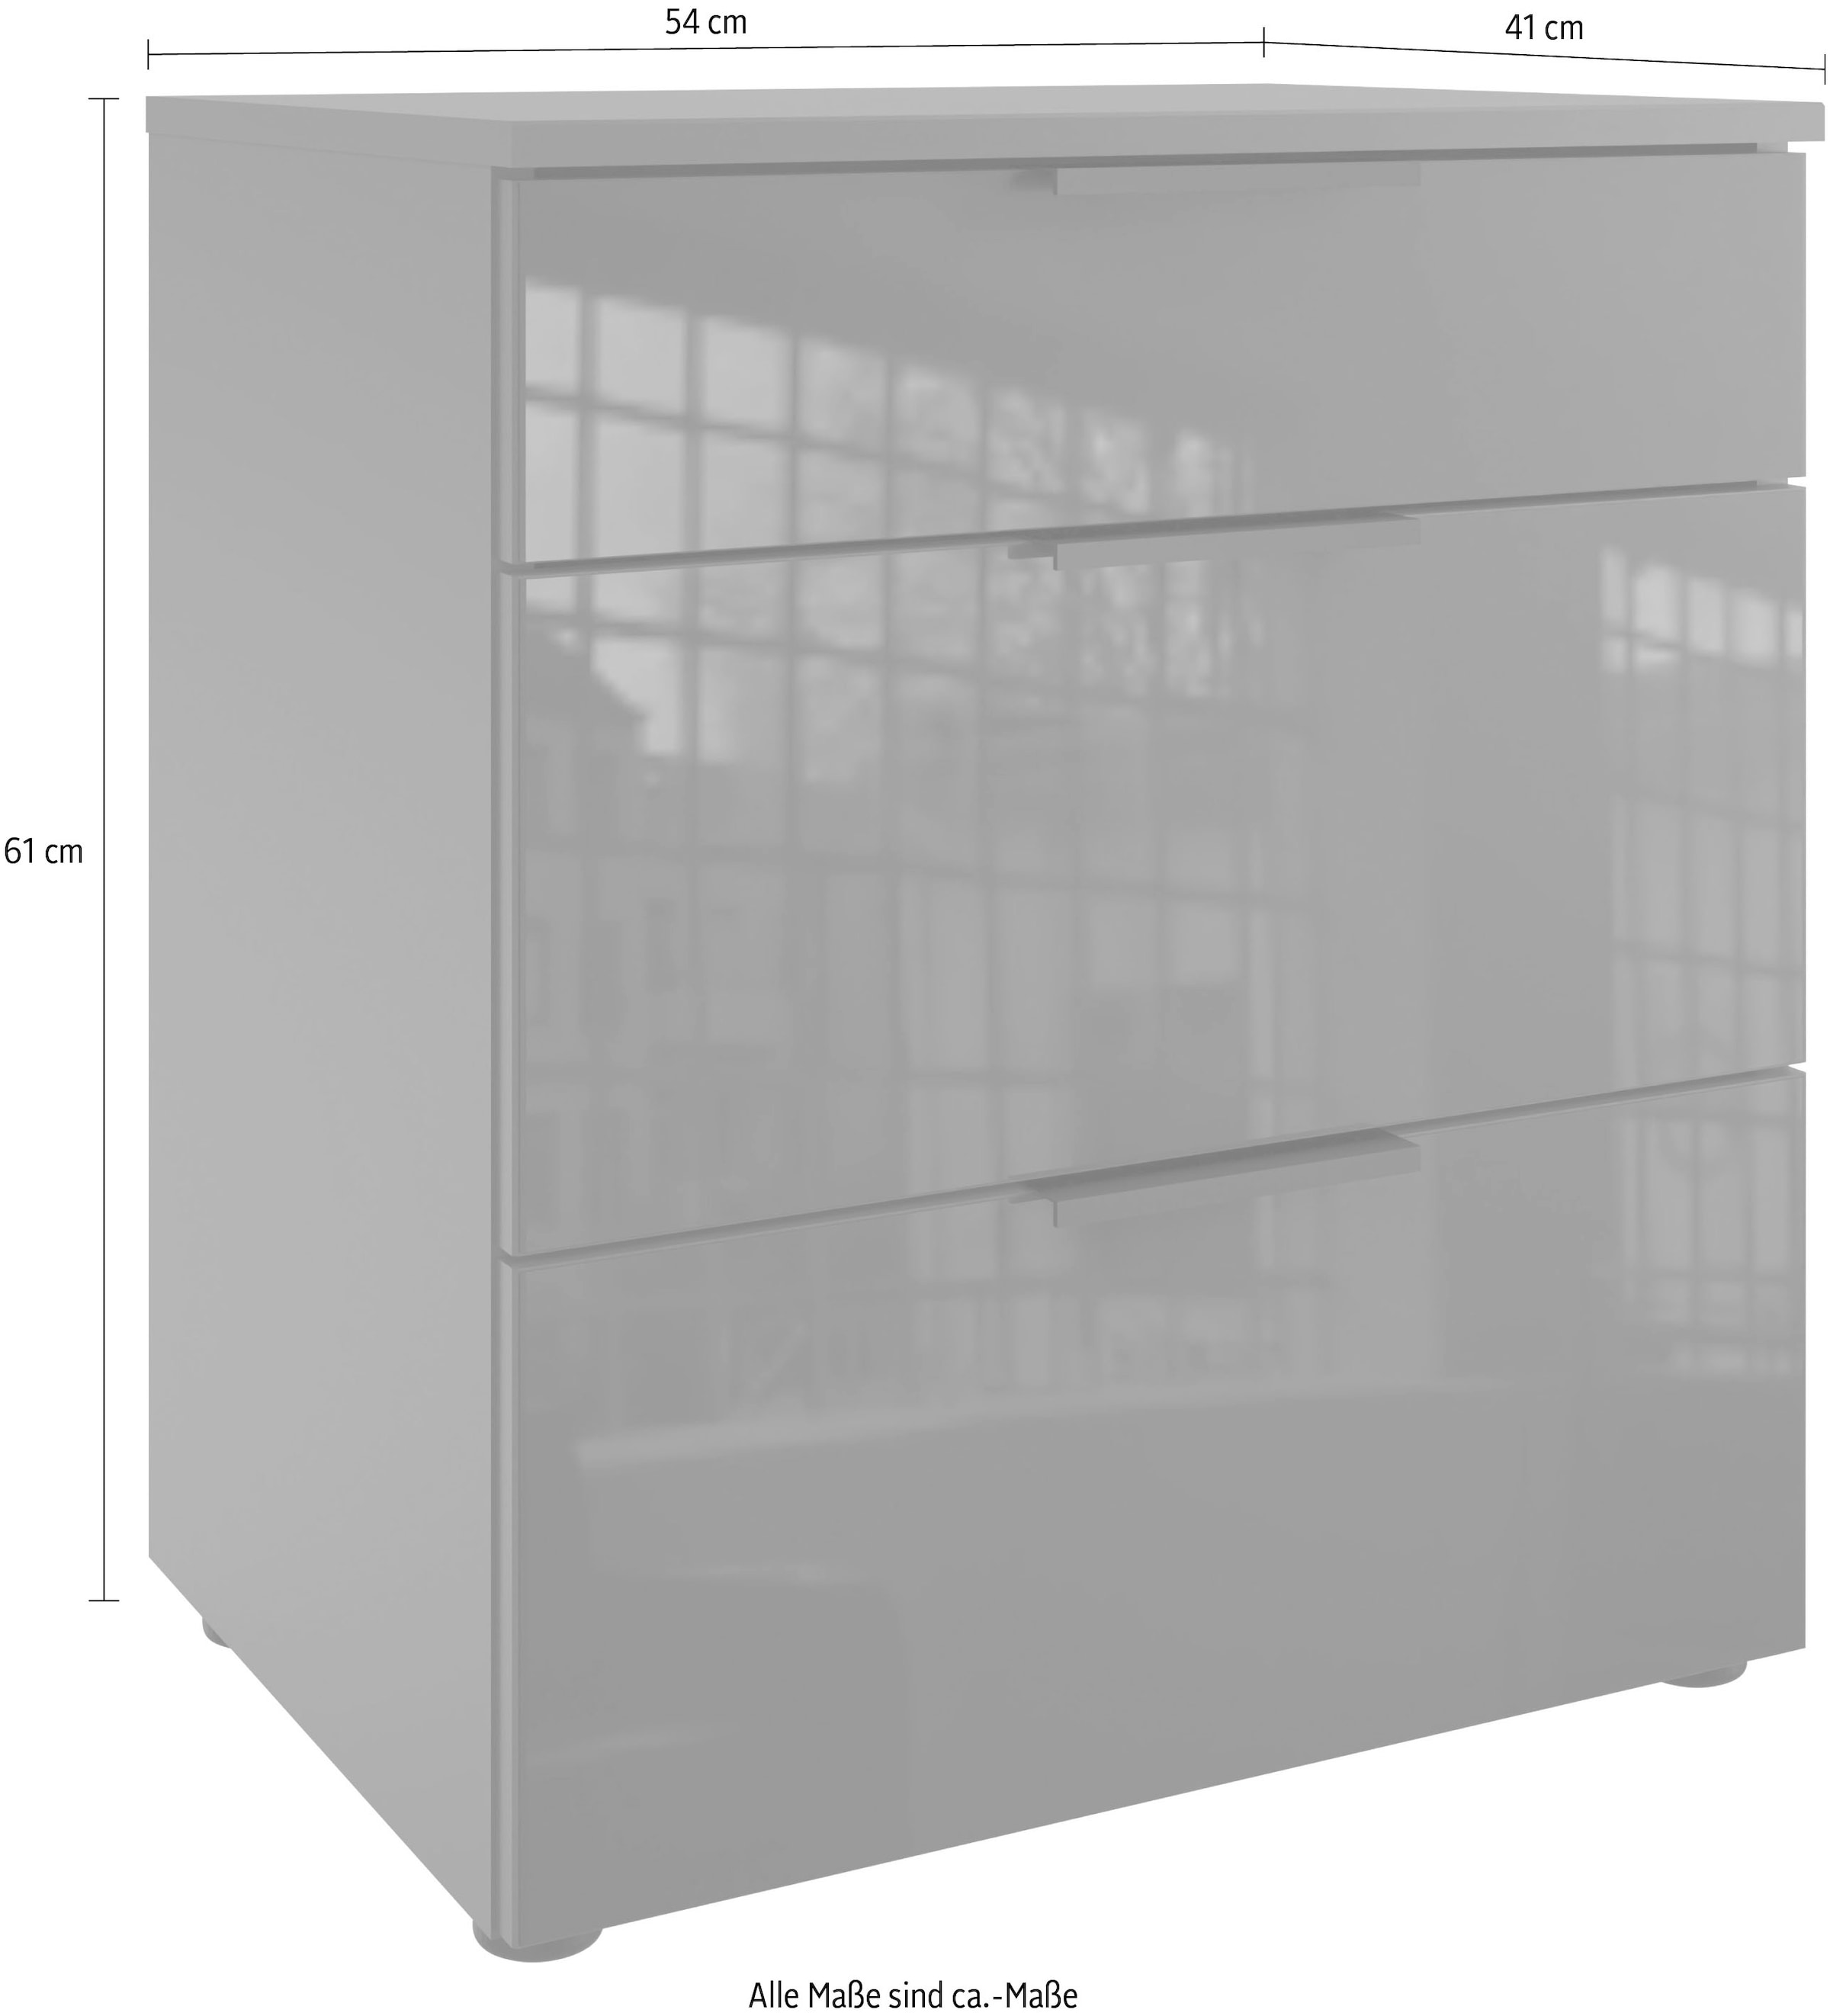 Wimex Nachtkommode »Level36 C by fresh to go«, mit Glaselementen auf der Front, soft-close Funktion, 54cm breit